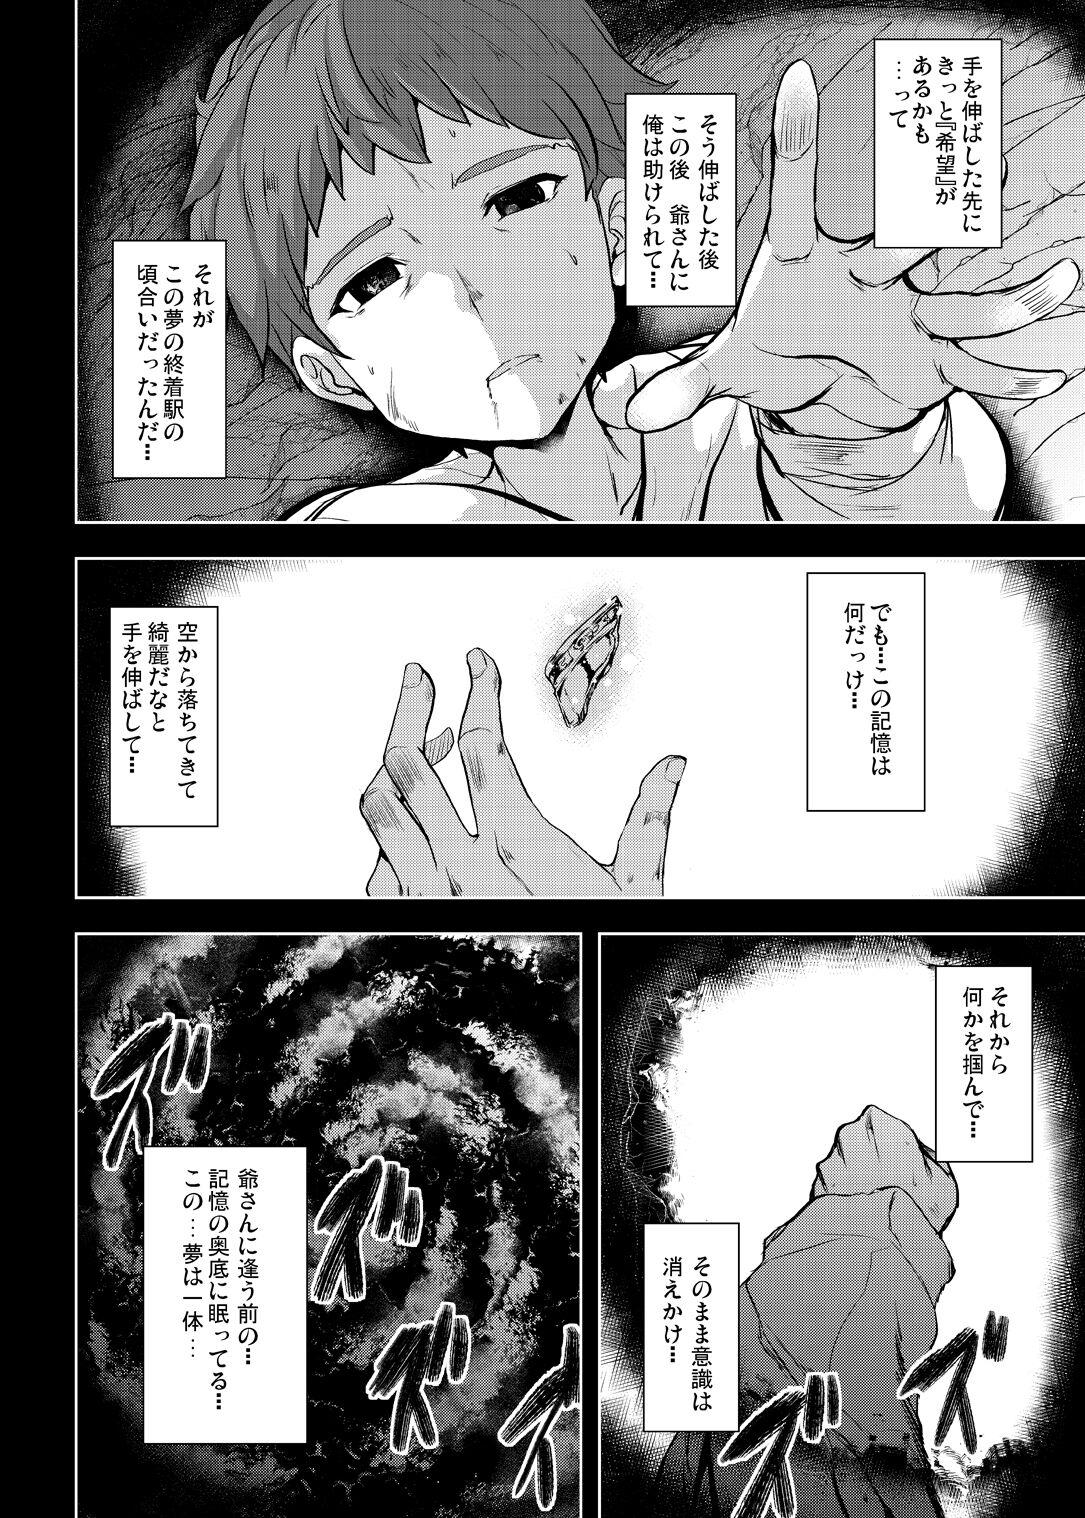 Tonari no Chichiou-sama Memories Vol. 1 55